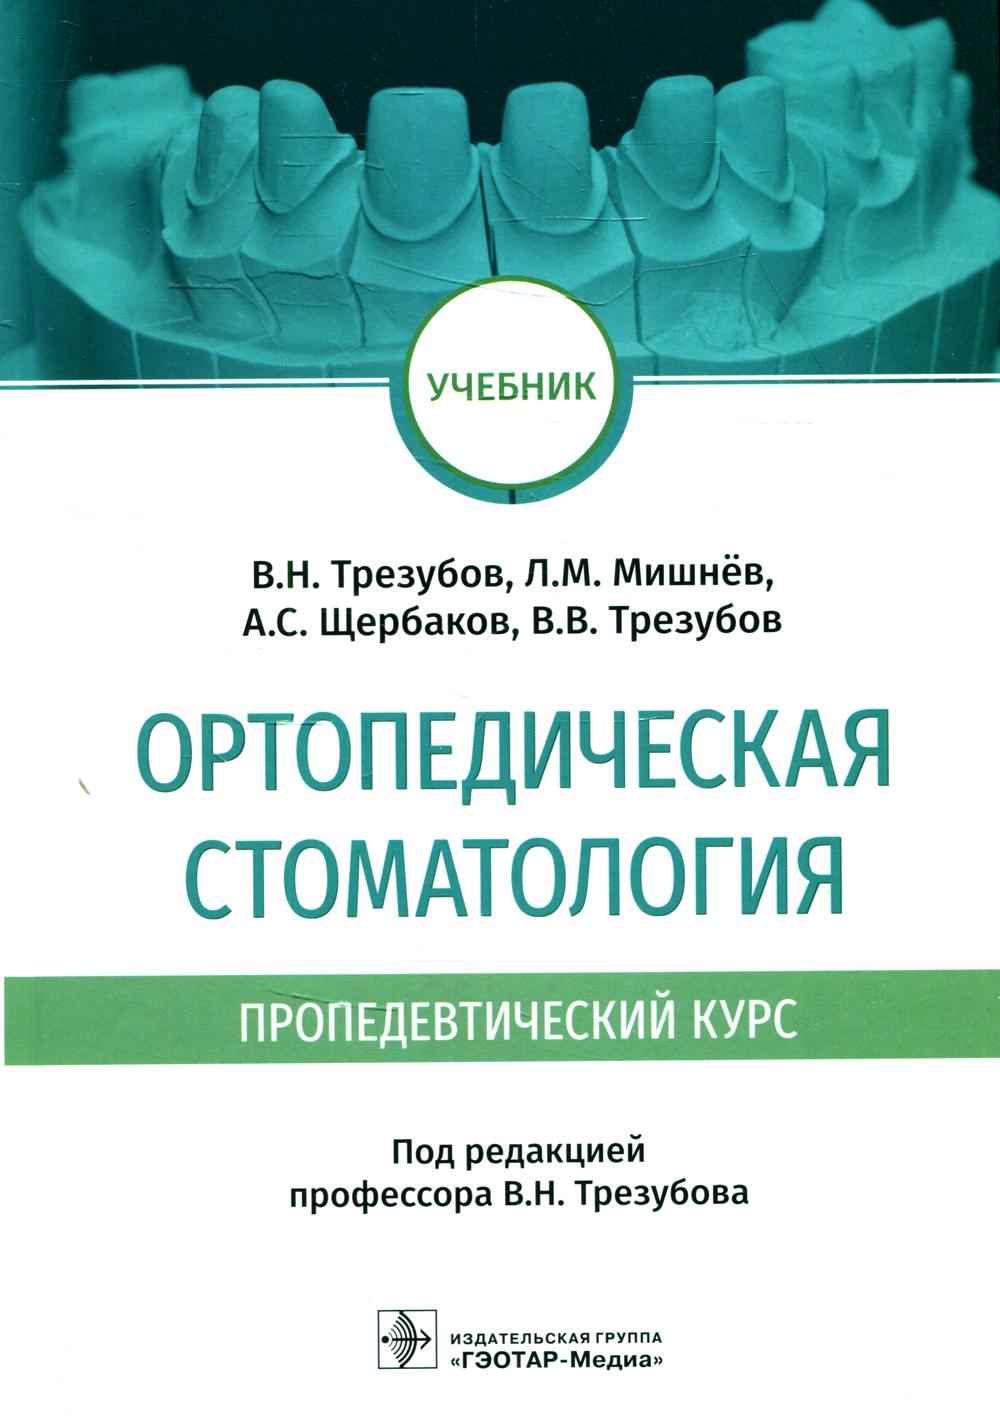 фото Книга ортопедическая стоматология (пропедевтический курс) гэотар-медиа